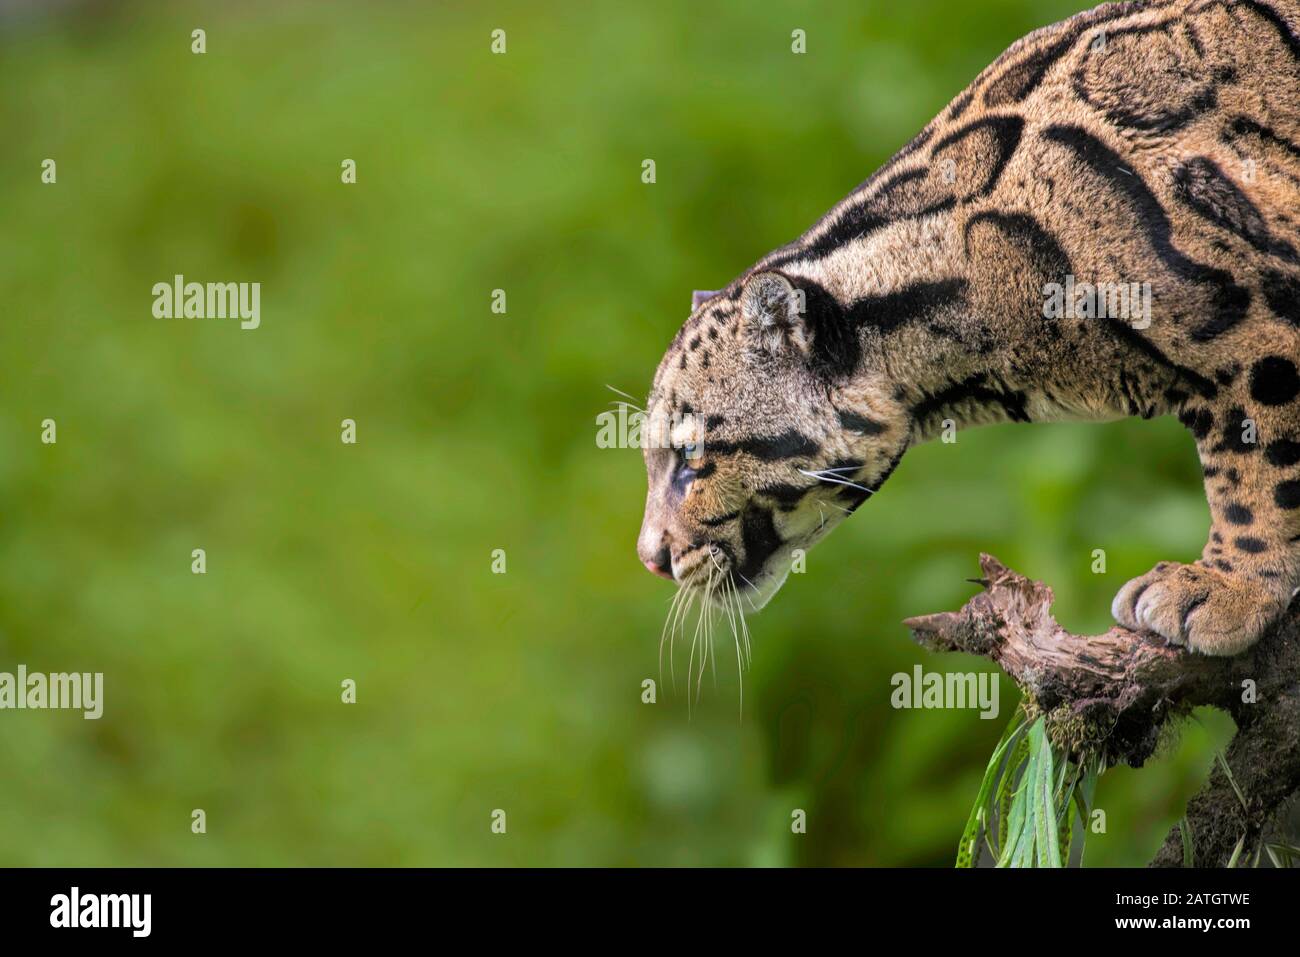 Getrübter Leopard, Neofelis nebulosa, Himalaya-Ausläufer, Indien. Auf der Roten Liste der Weltnaturschutzindien als Gefährdet gelistet. Stockfoto